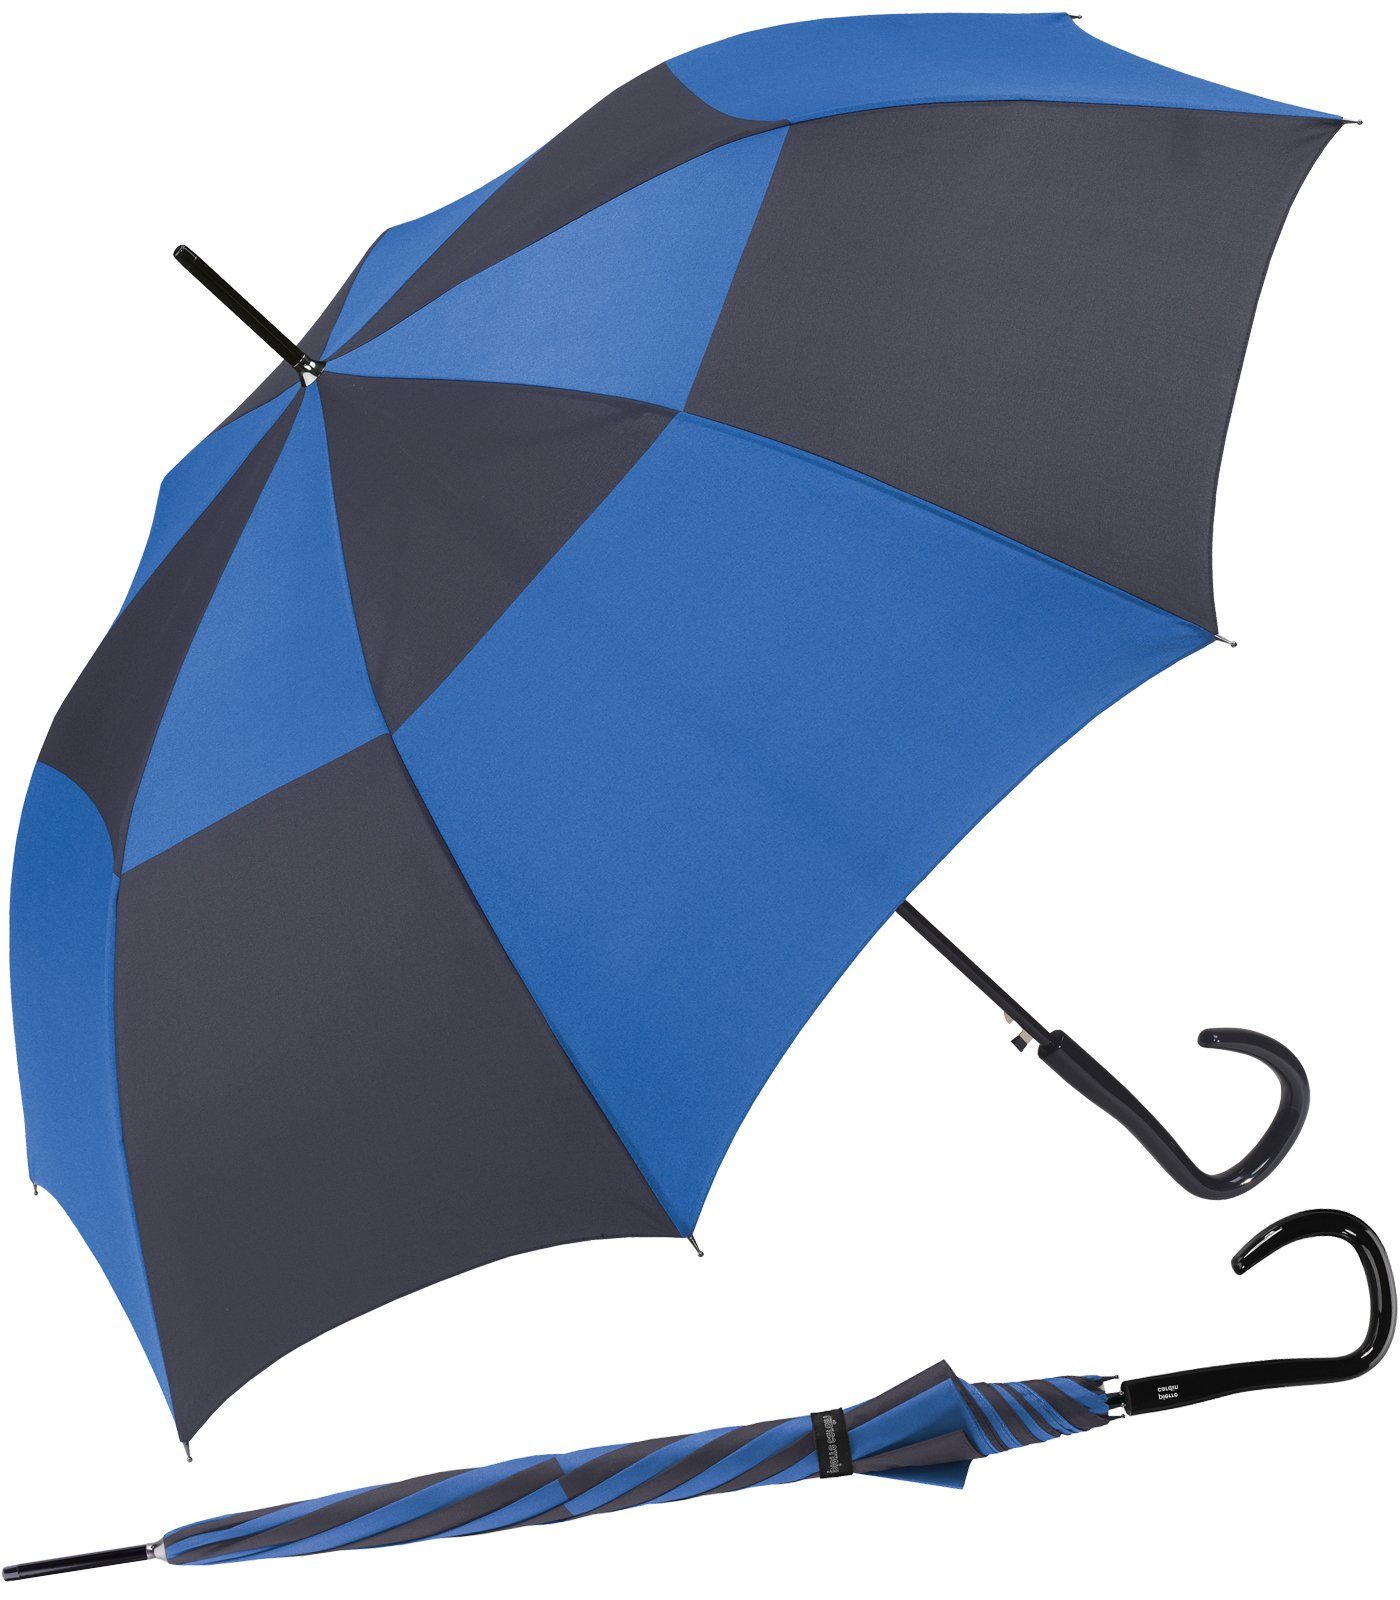 Pierre Cardin Langregenschirm großer Damen-Regenschirm mit Auf-Automatik, starke Kontraste auf einem eleganten Schirm blau-schwarz